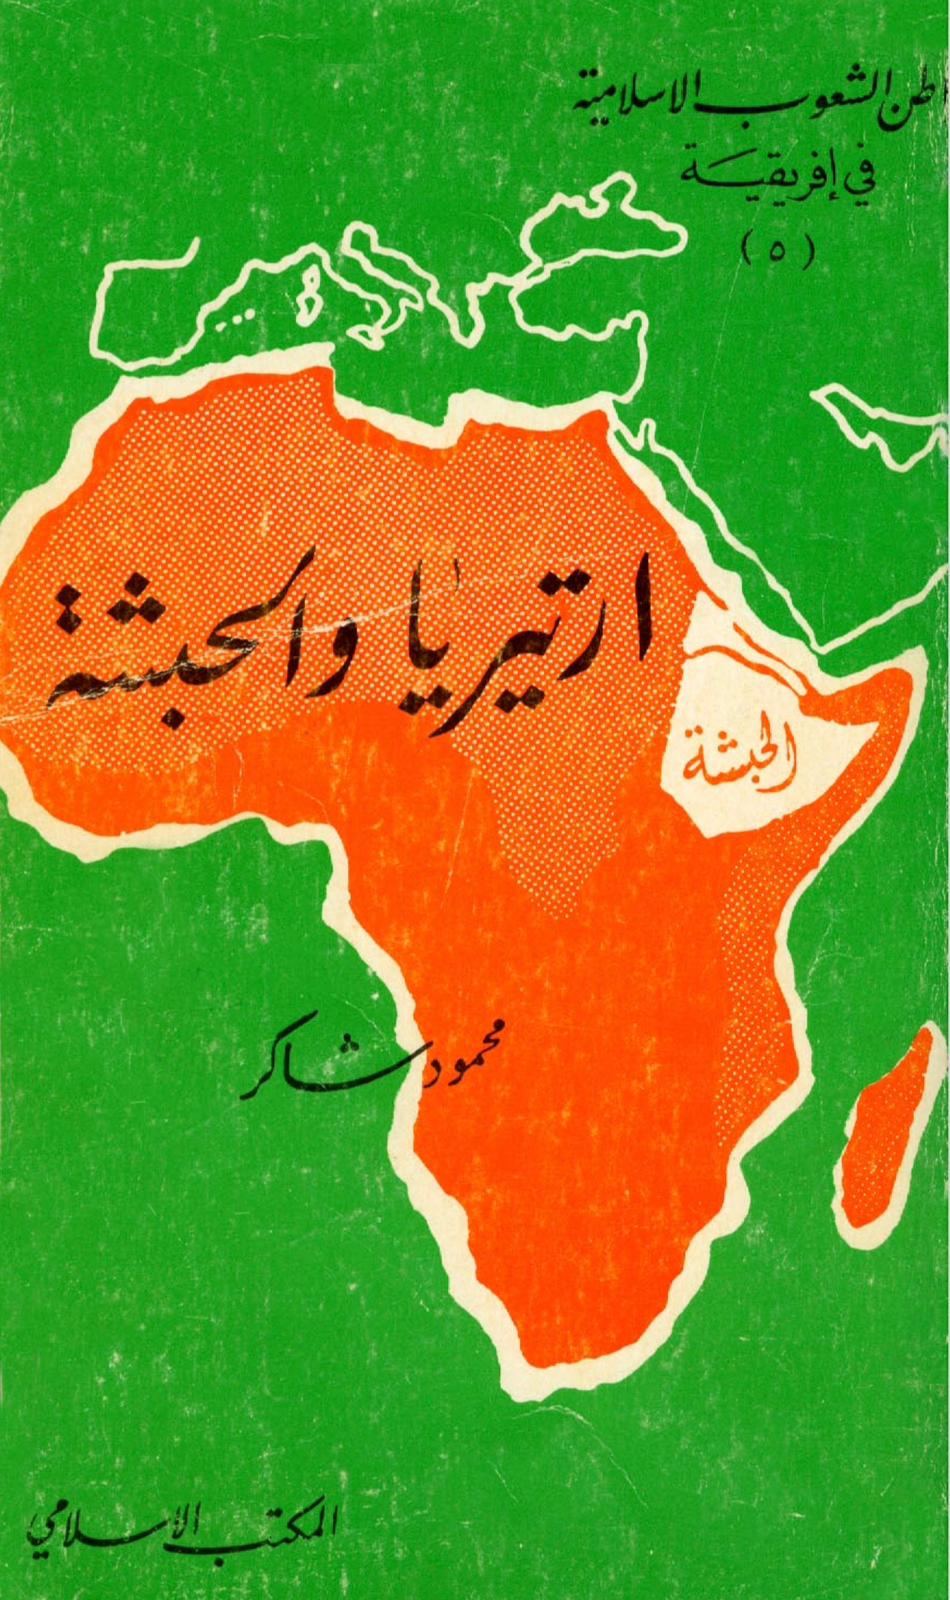 مواطن الشعوب الاسلامية في إفريقية
(٥)
ارتيريا والحبشة